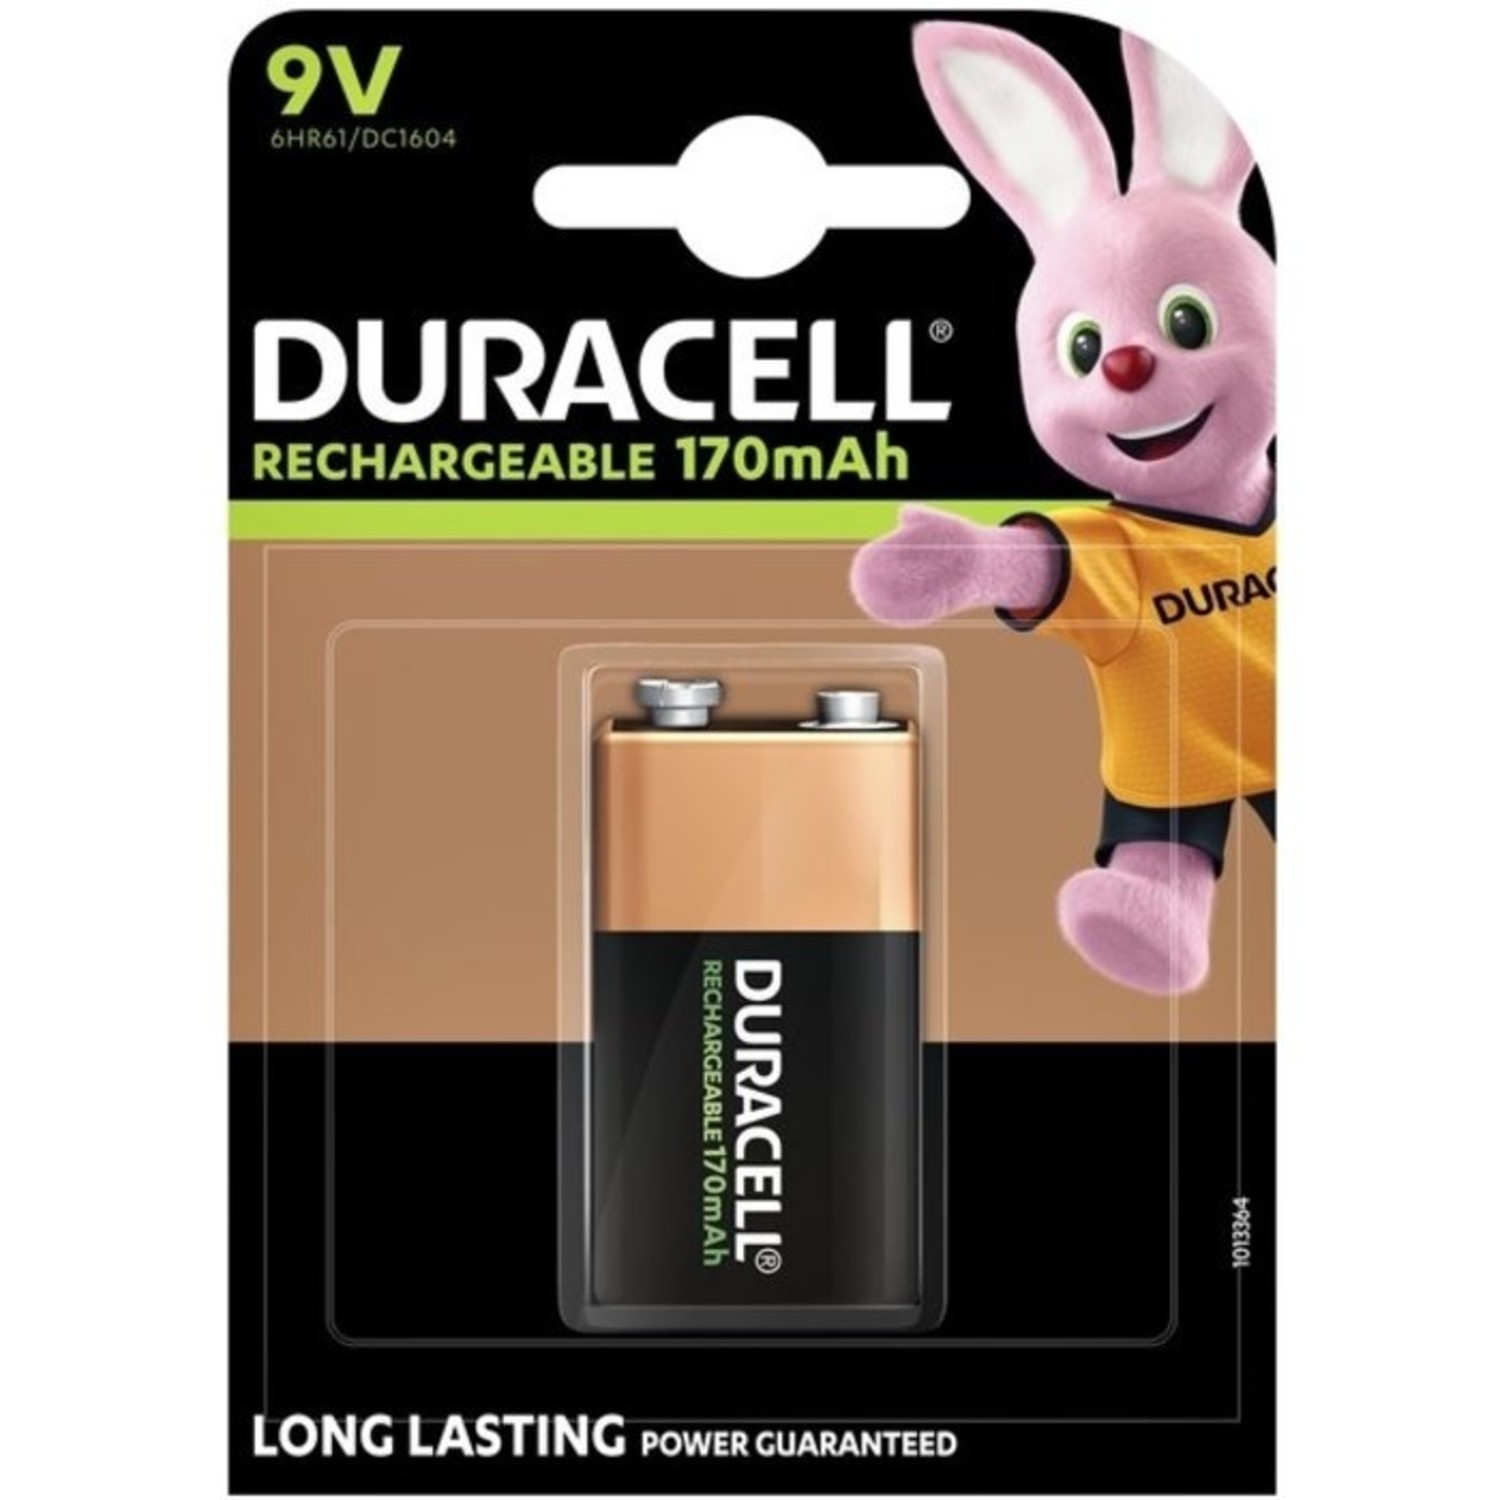 Geestelijk landinwaarts Onheil Duracell oplaadbare 9V batterij kopen? - Batterijenstunter.nl